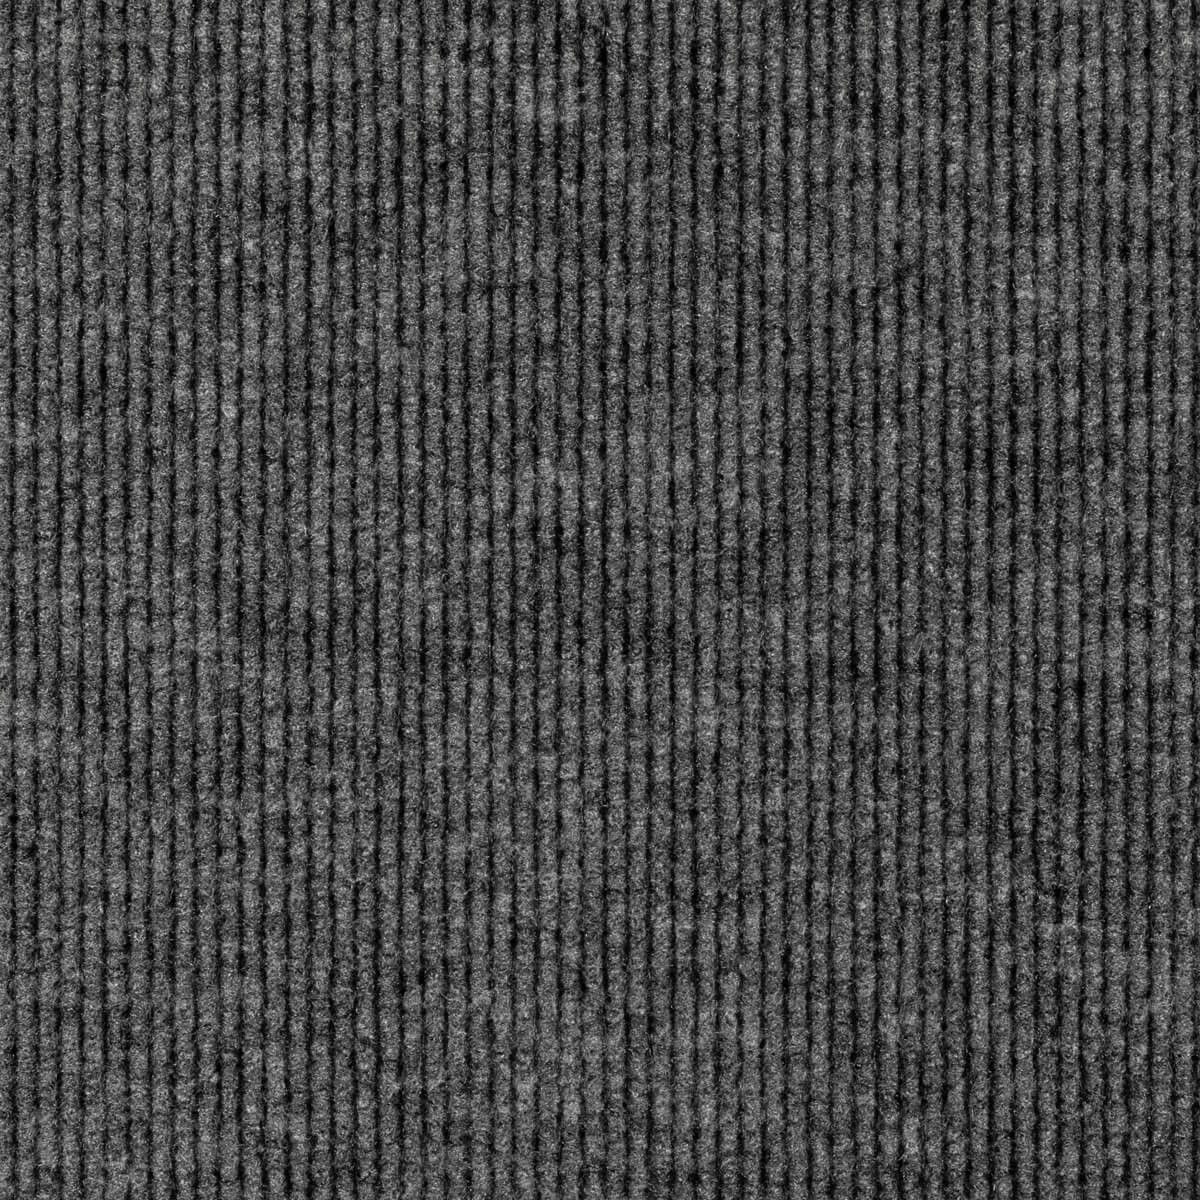 ФЛОРТ-ЭКСПО выставочный ковролин темно-серый (2м) (100 кв.м.) / FLOORT-EXPO 01002 ковролин коммерческий выставочный темн